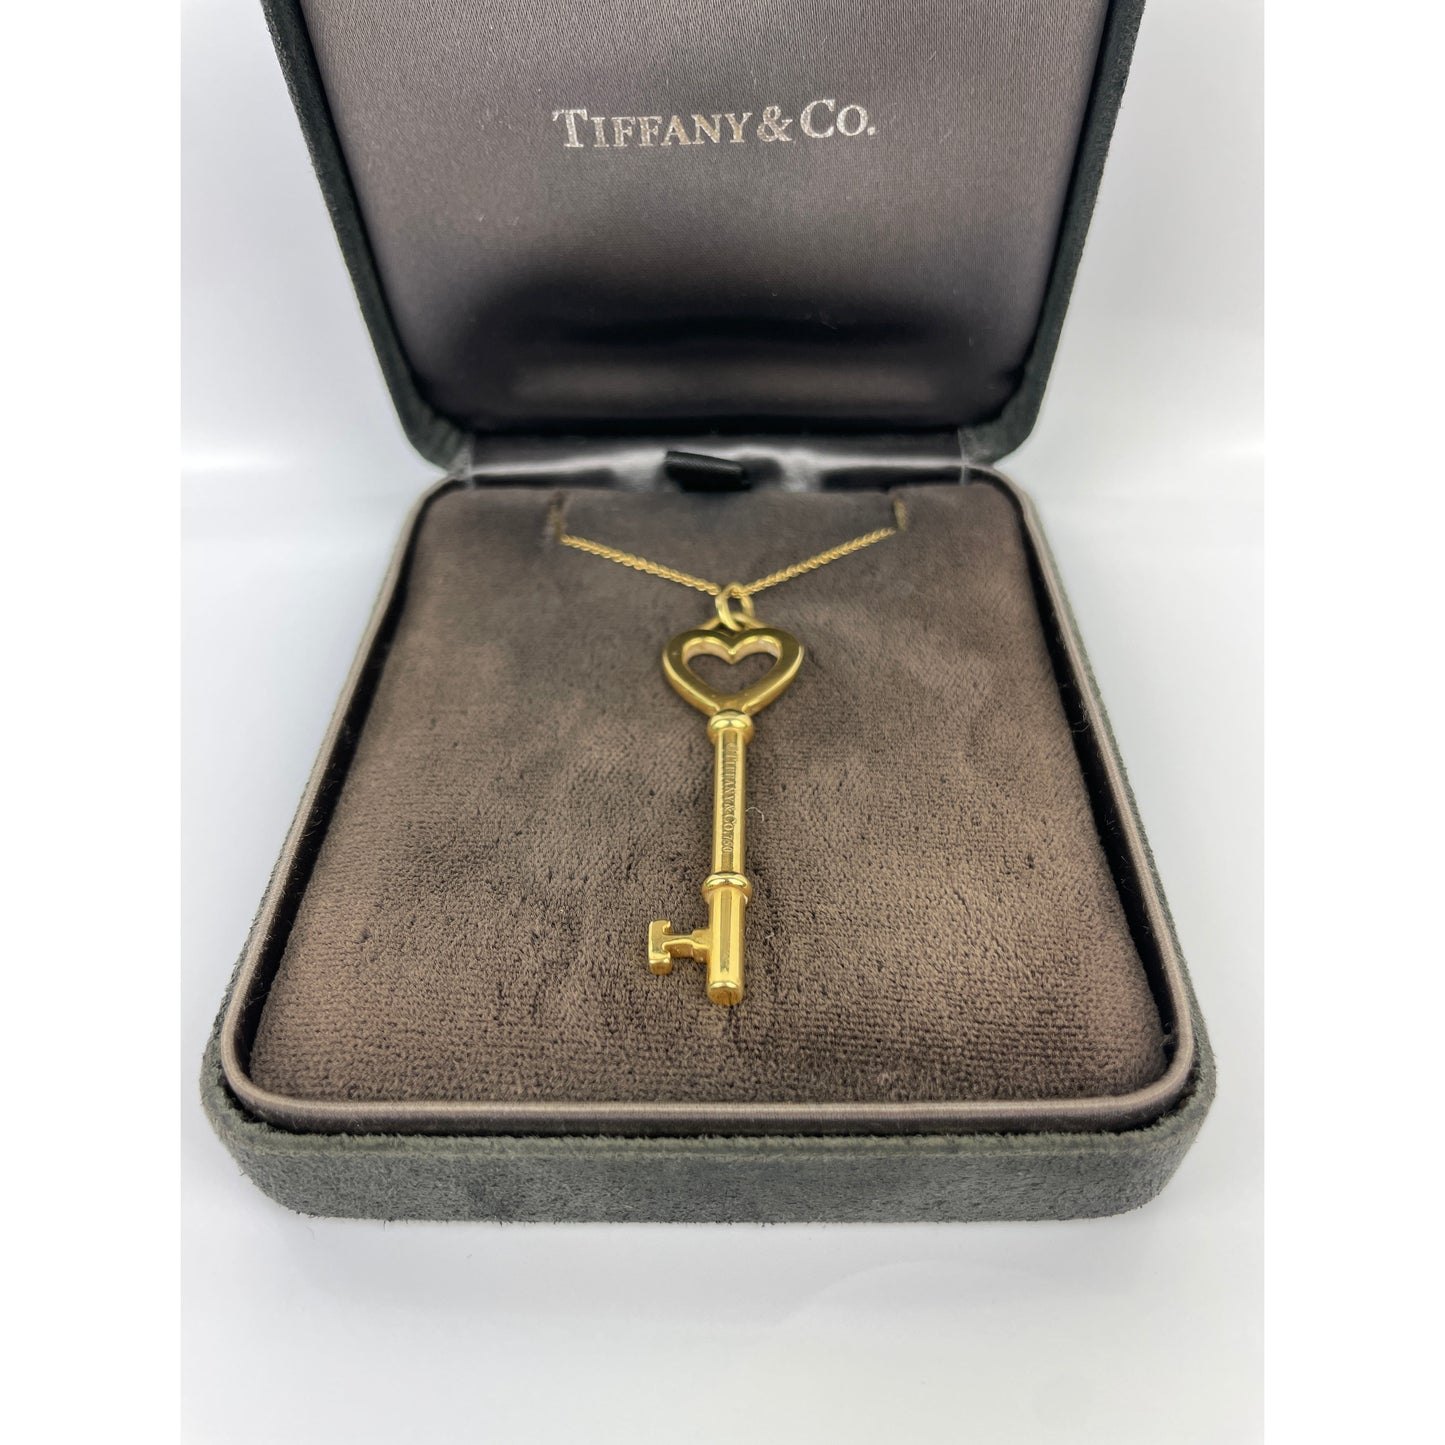 Tiffany & Co. 18k Gold Key Necklace